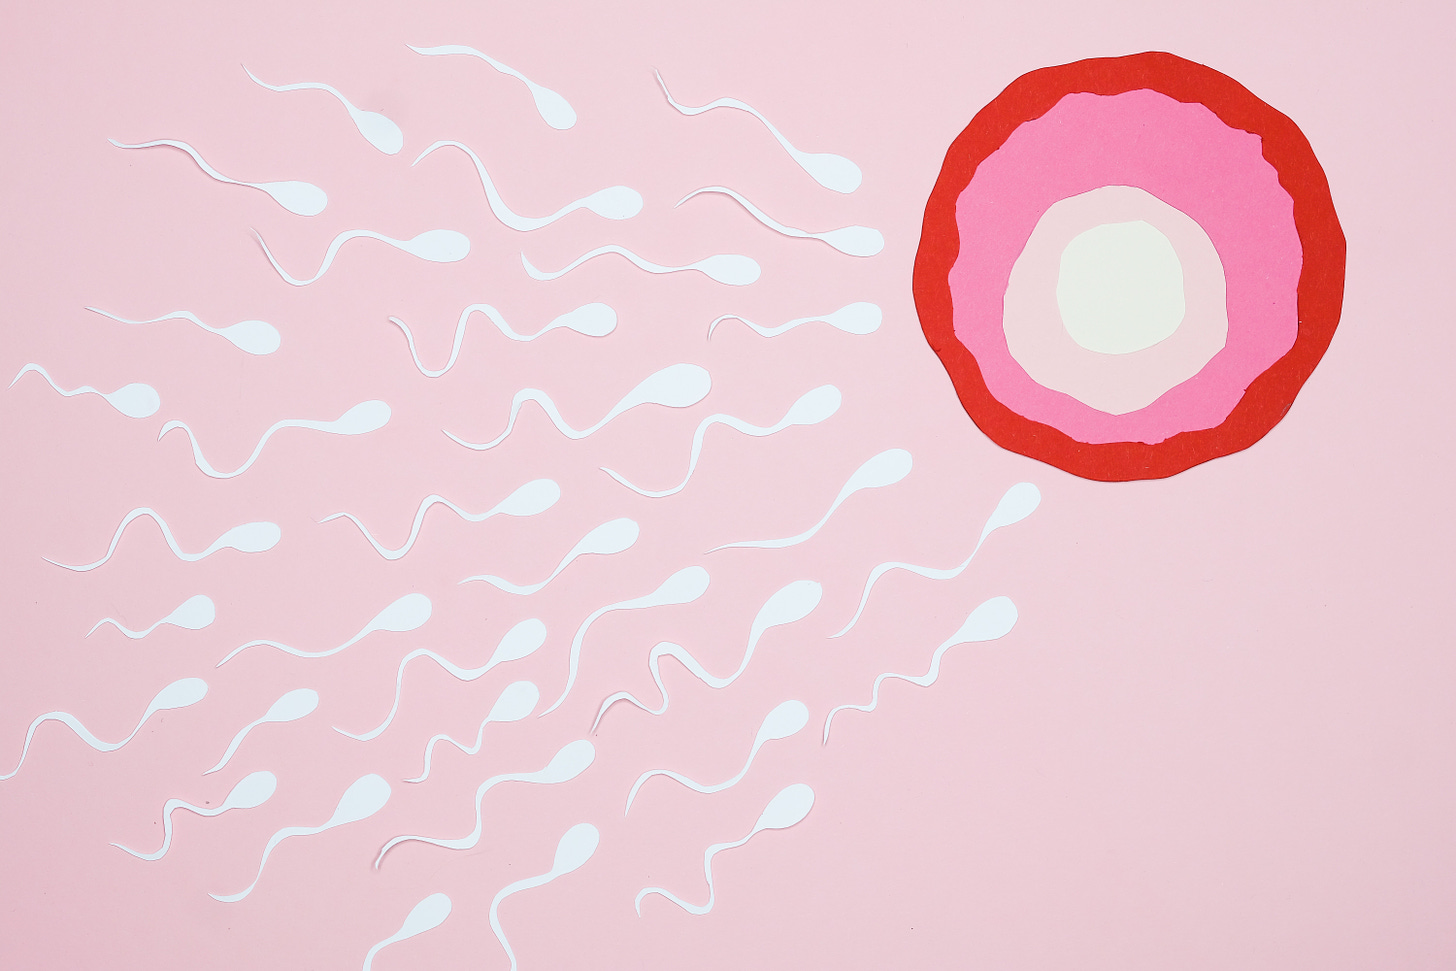 an image (cartoon or painting) of several dozen sperm converging on an ovum/egg